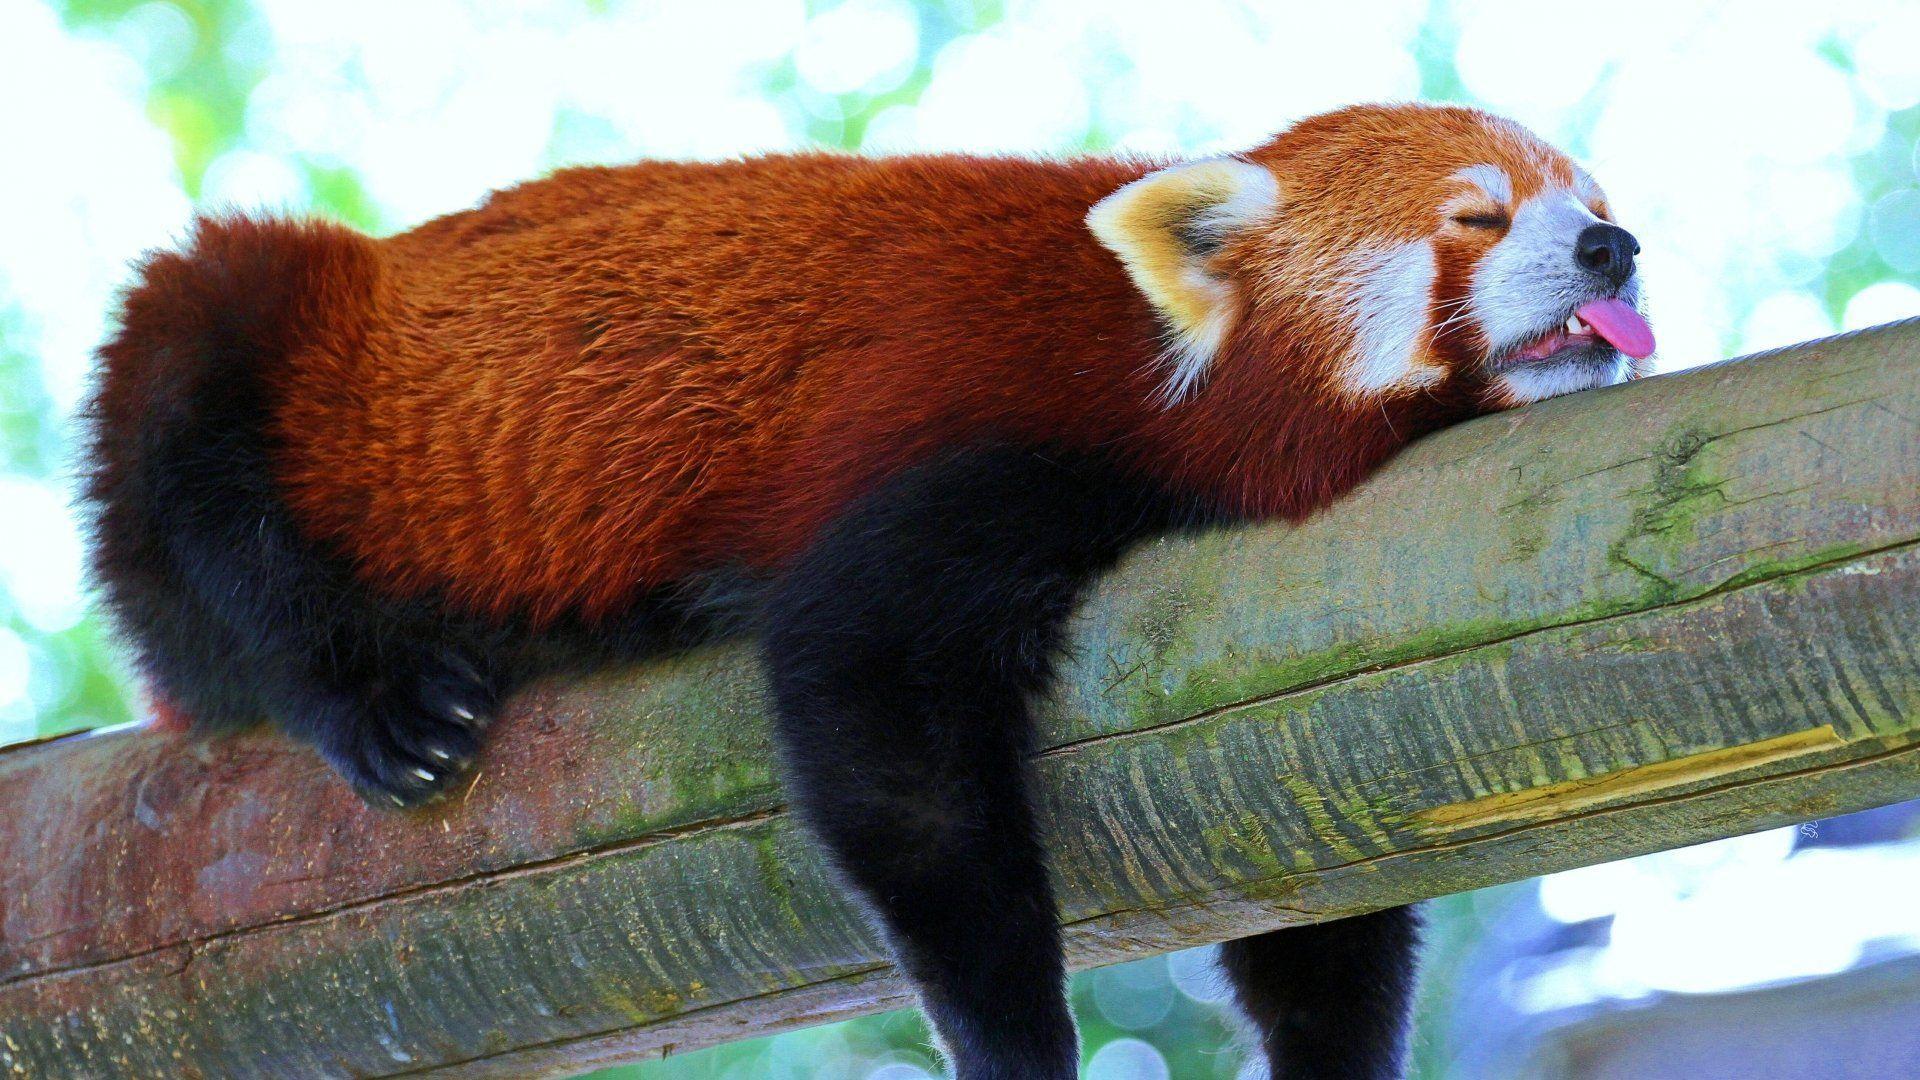 Red Panda HD Wallpaper